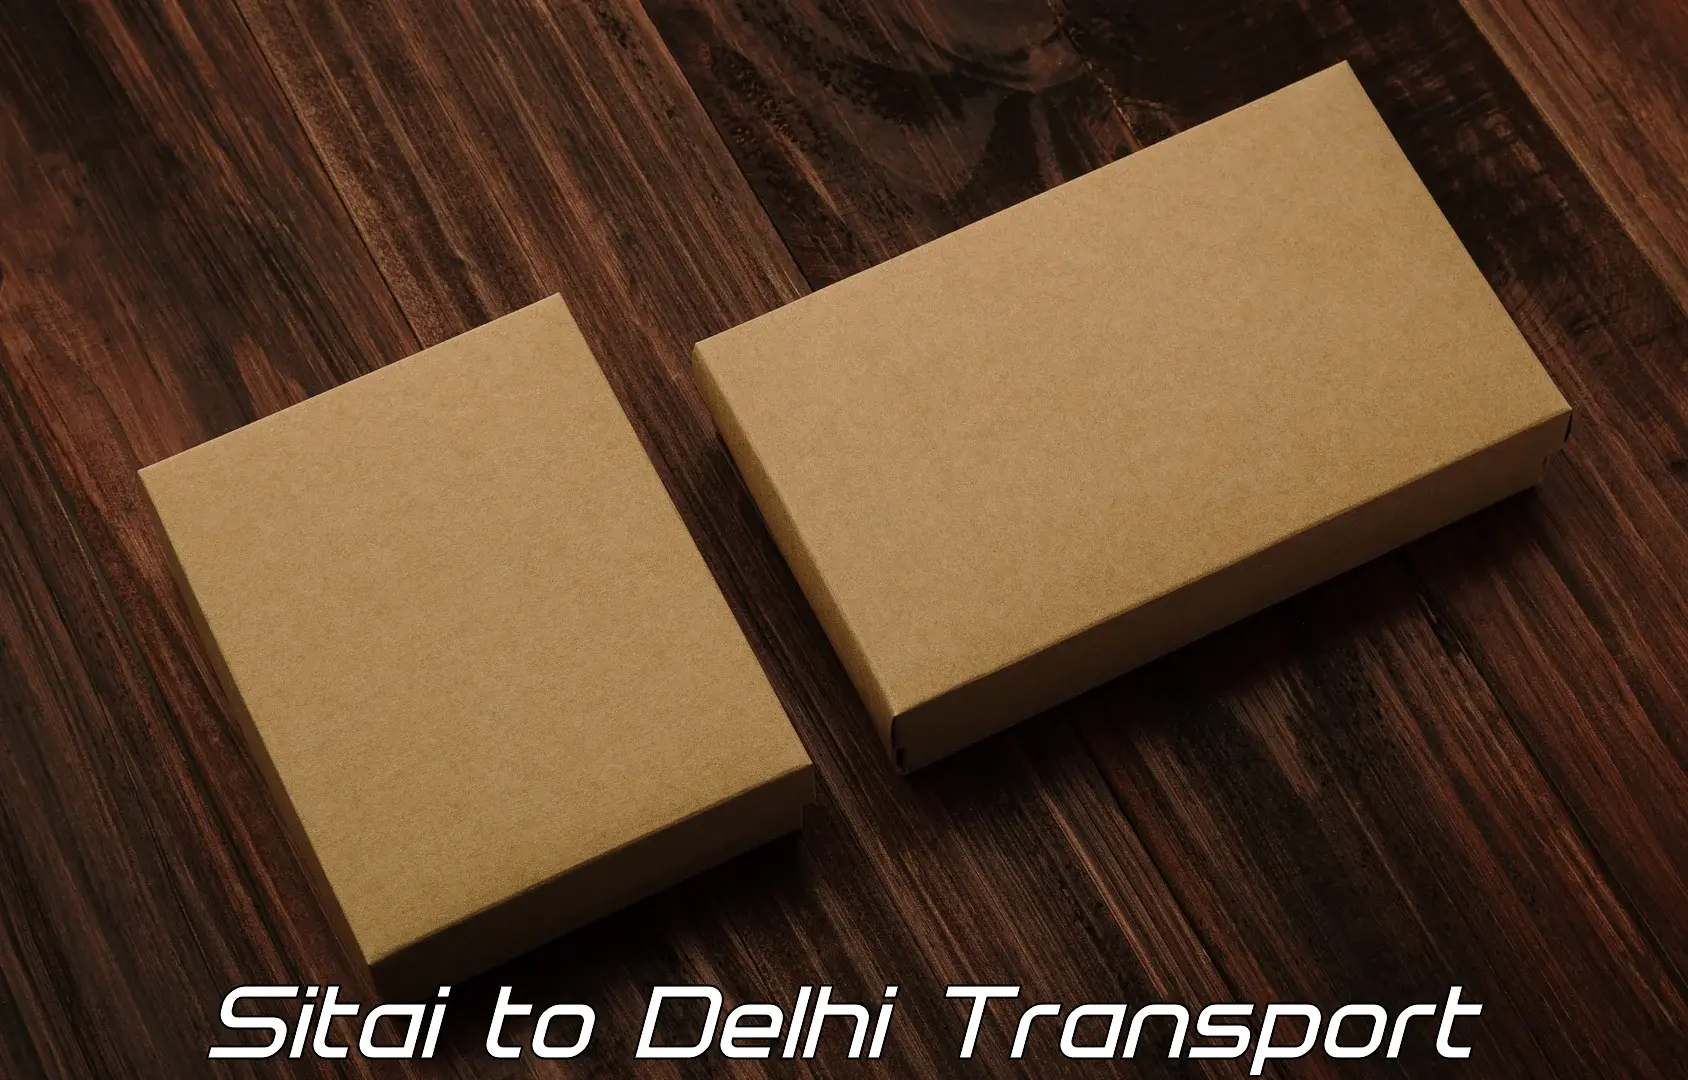 Cargo train transport services Sitai to Delhi